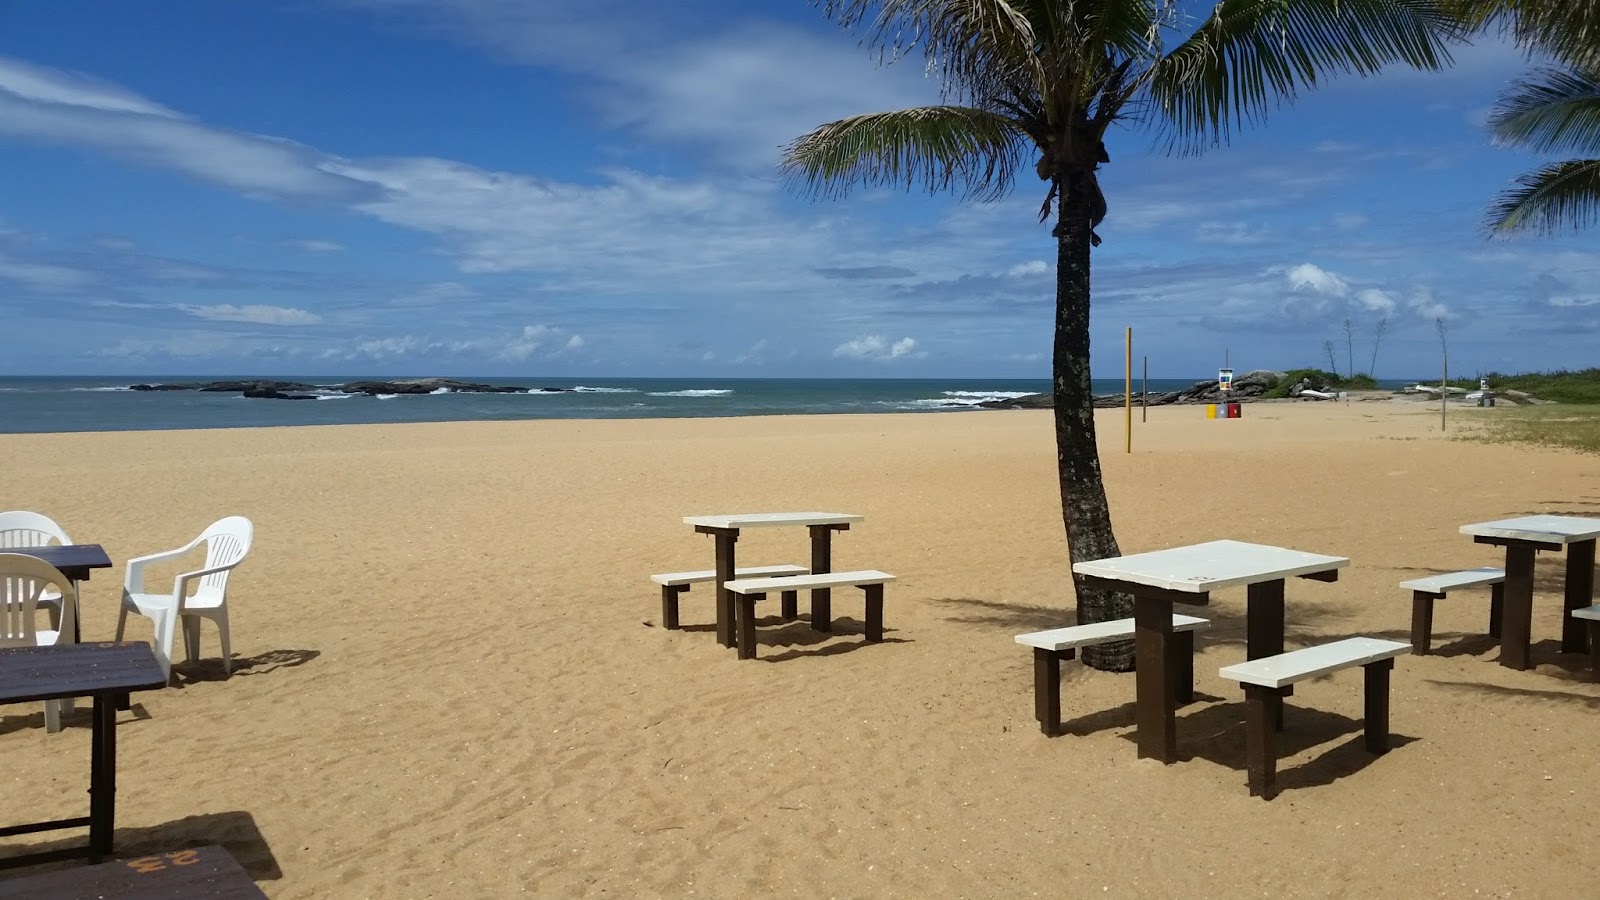 Fotografie cu Plaja Mar do Norte - locul popular printre cunoscătorii de relaxare